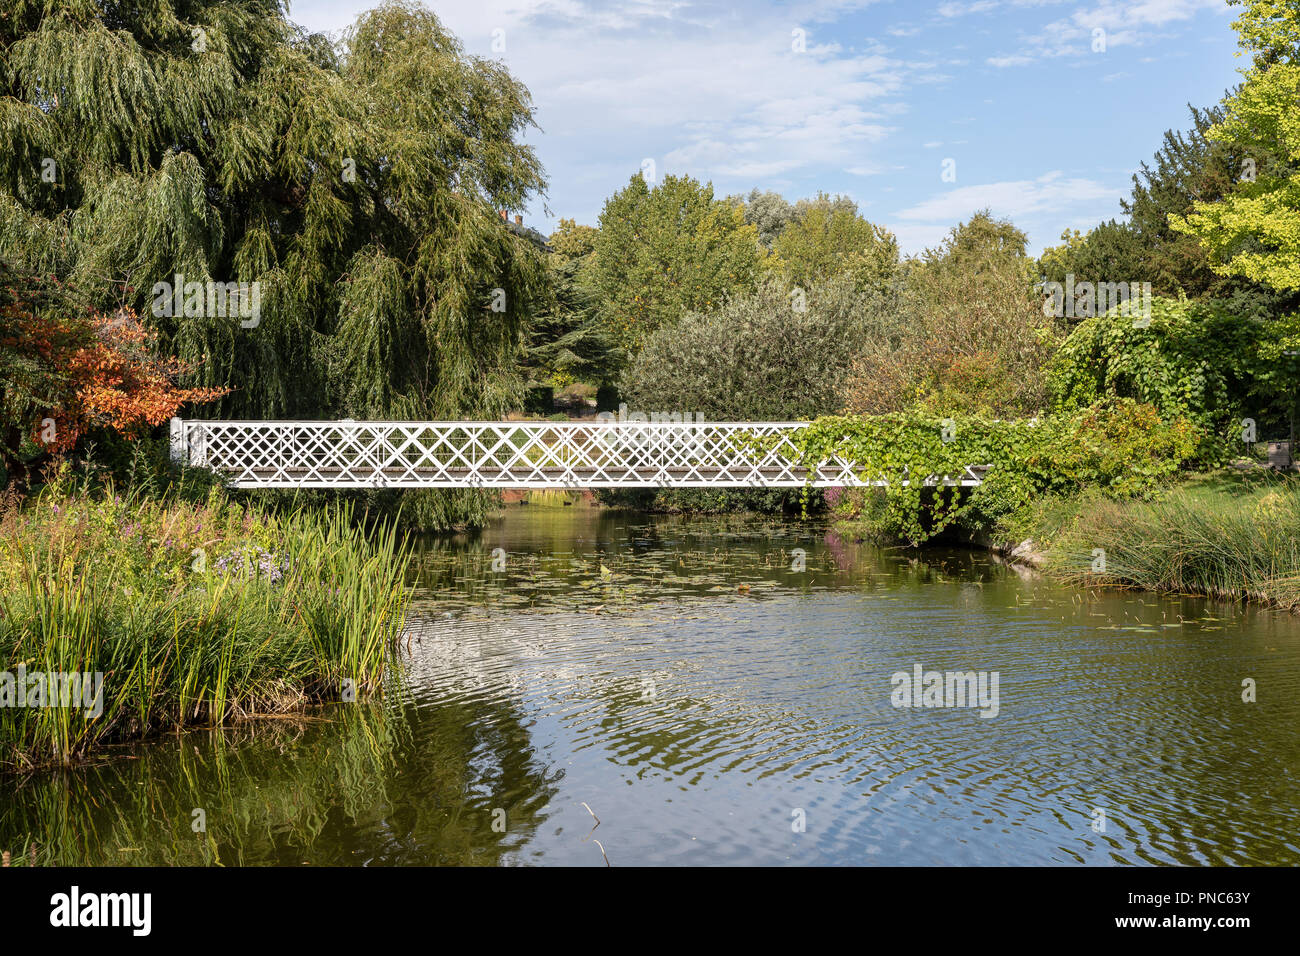 White bridge over pond in University of Copenhagen Botanical Garden, Copenhagen, Denmark Stock Photo